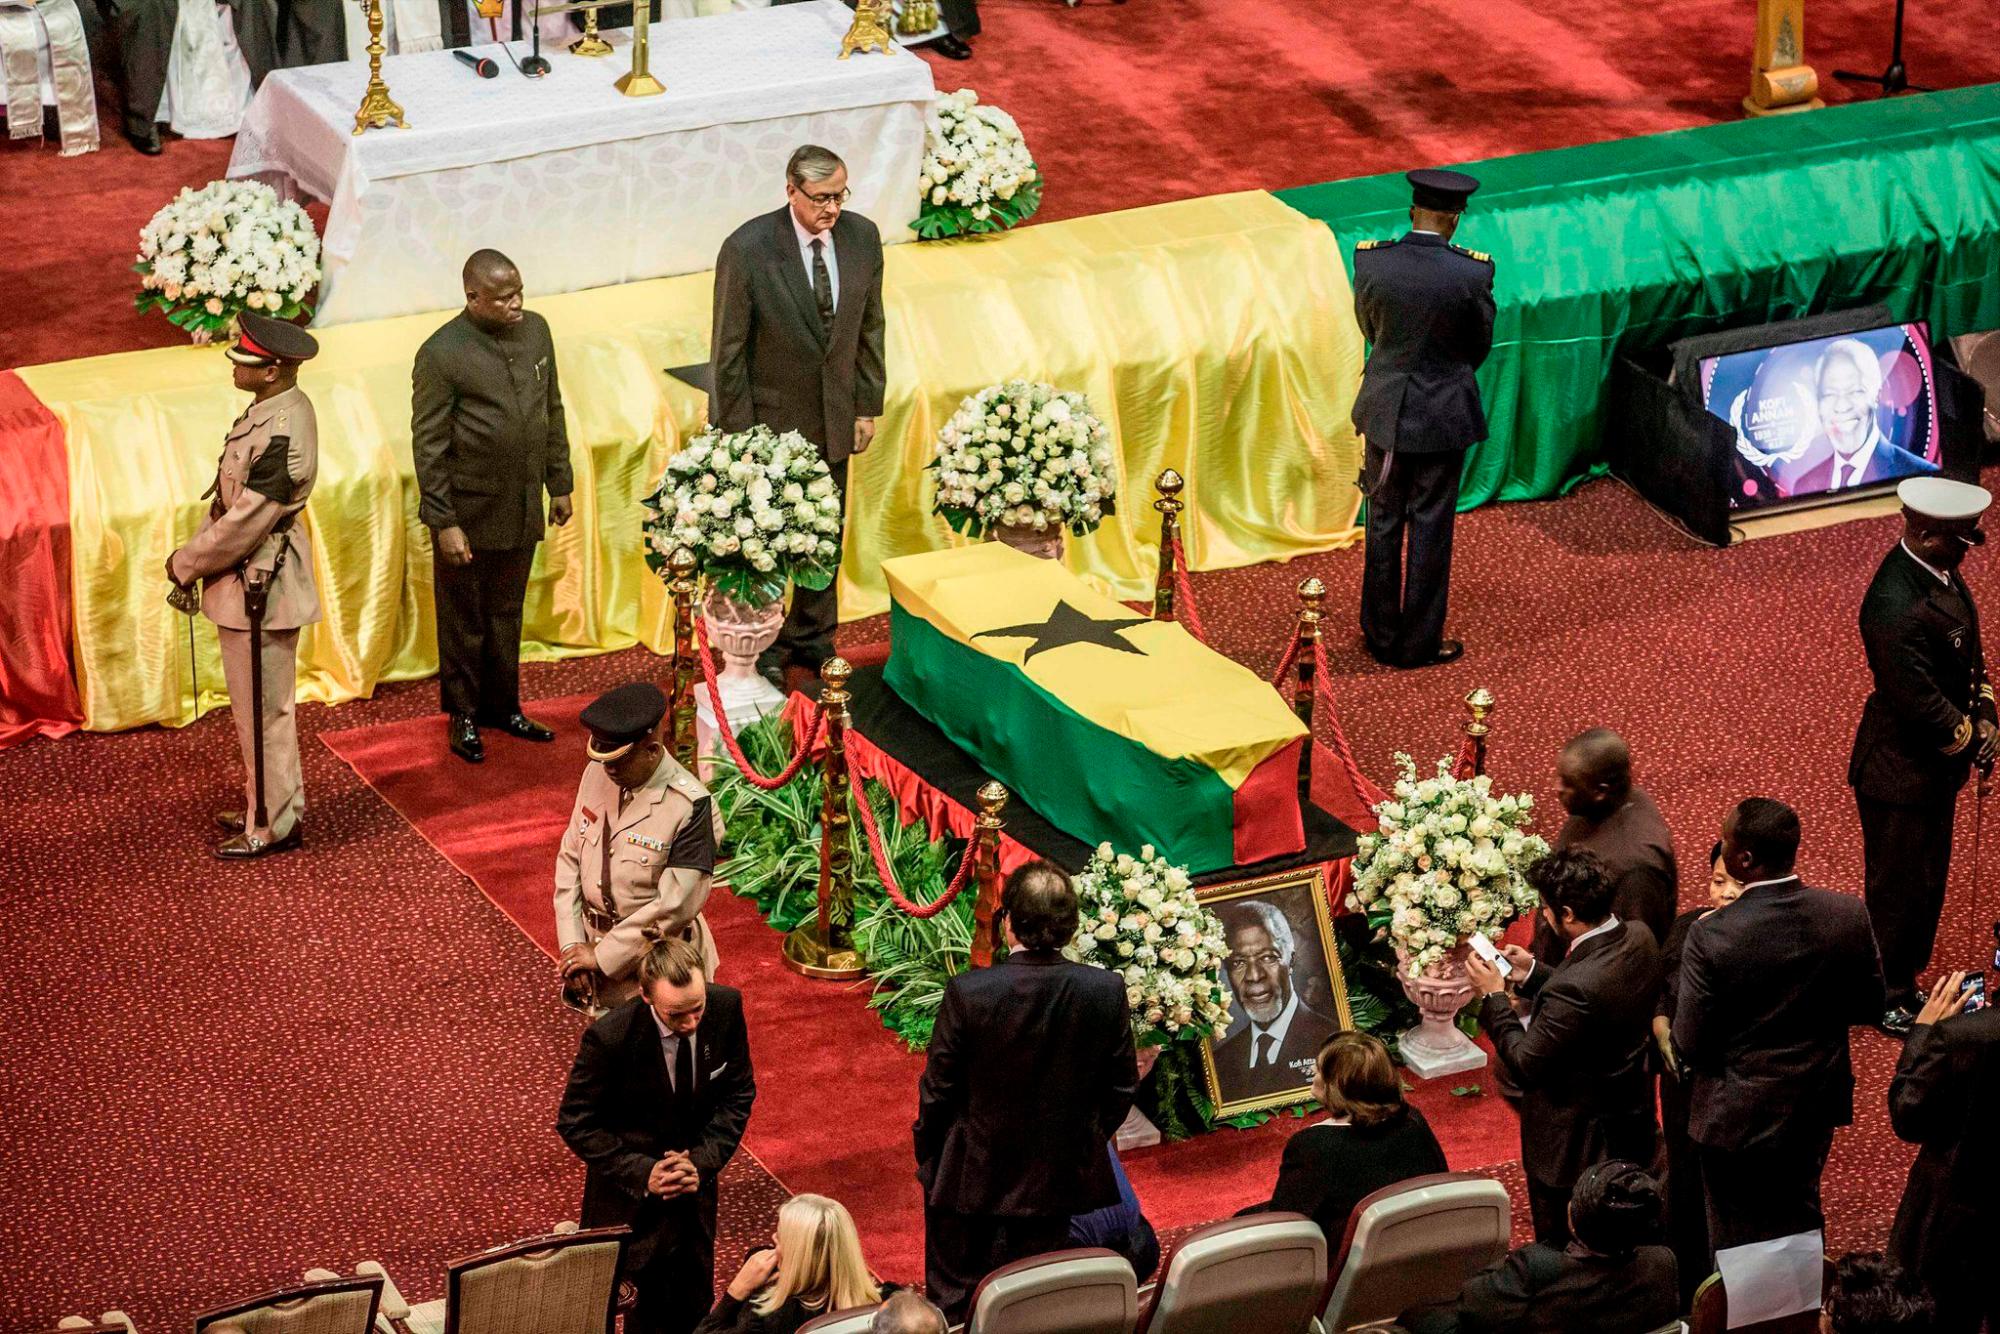 Líderes mundiales y la realeza dieron el último adiós al exsecretario general de las Naciones Unidas (ONU), Kofi Annan,que falleció el 18 de agosto de 2018, fué sepultado en su natal Ghana, luego de tres días de duelo nacional y a casi un mes de su fallecimiento en Ginebra.